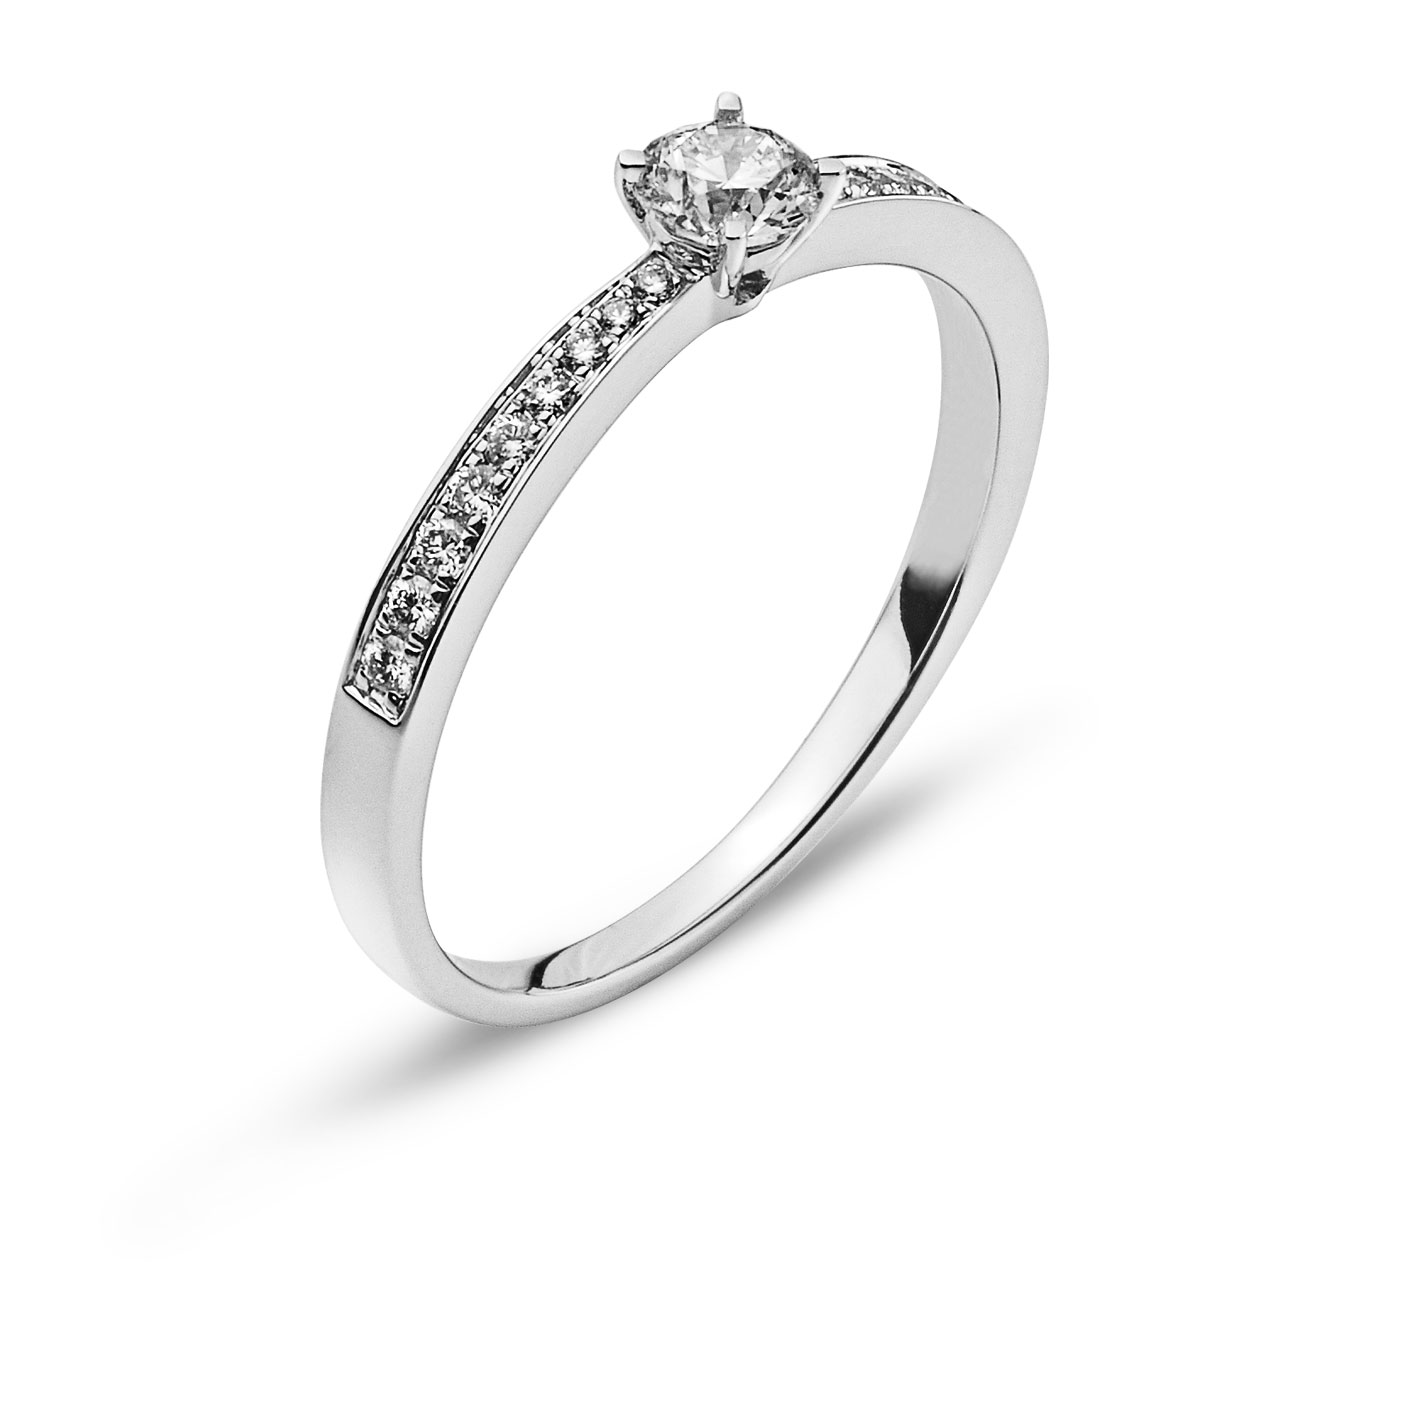 AURONOS Prestige Ring white gold 18K diamonds 0.34ct